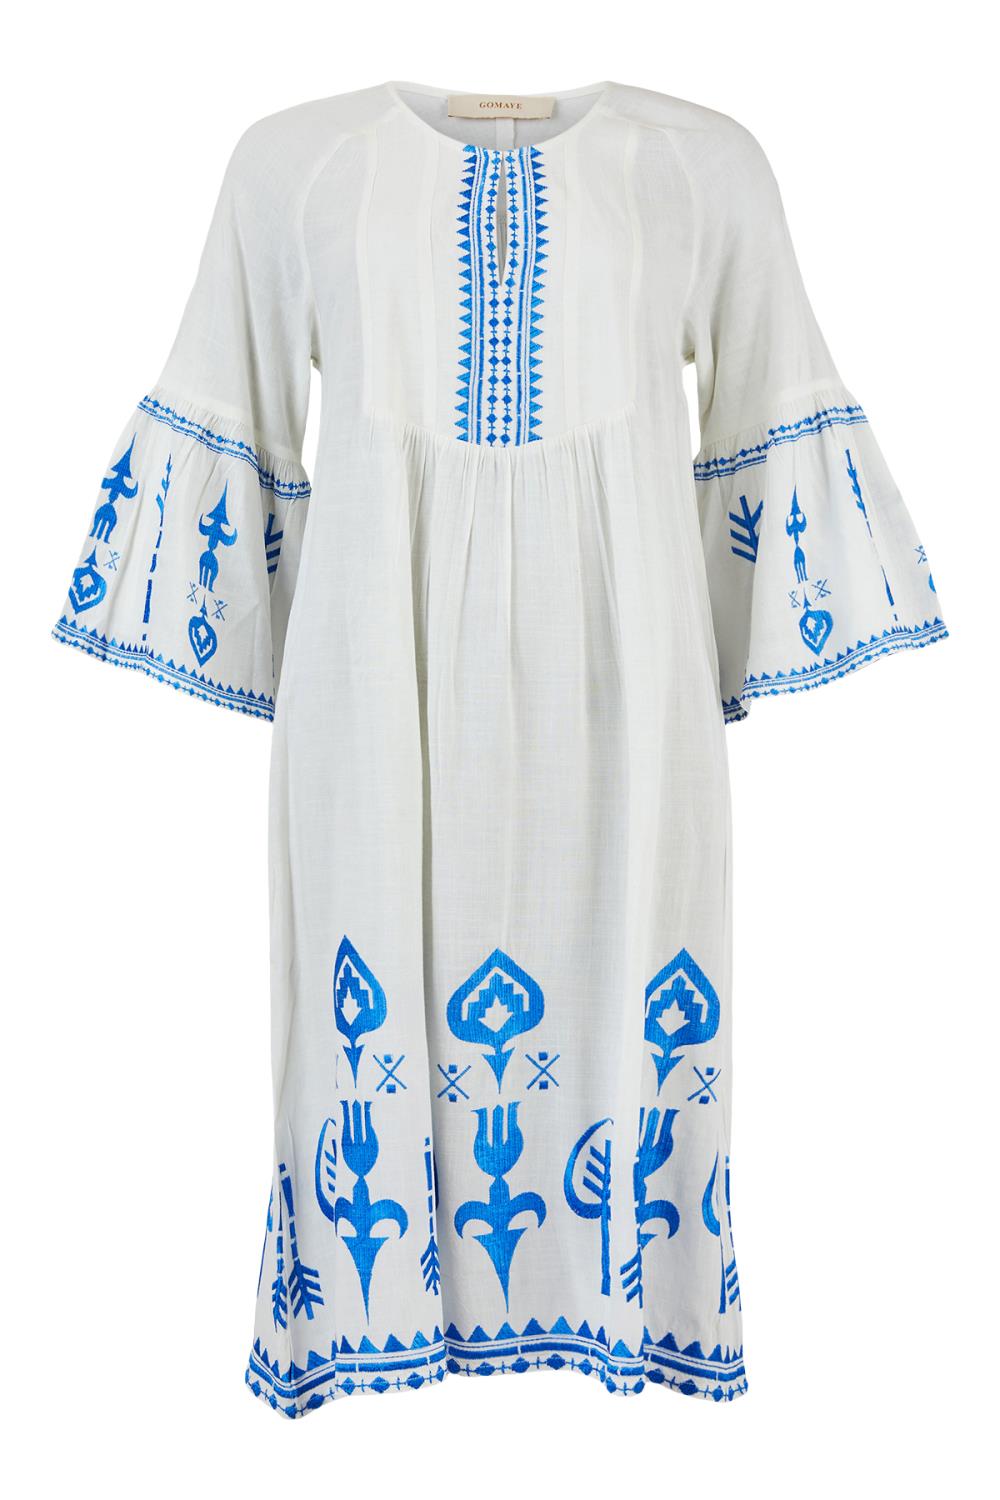 Gomaye kjole med broderi, hvit/blå